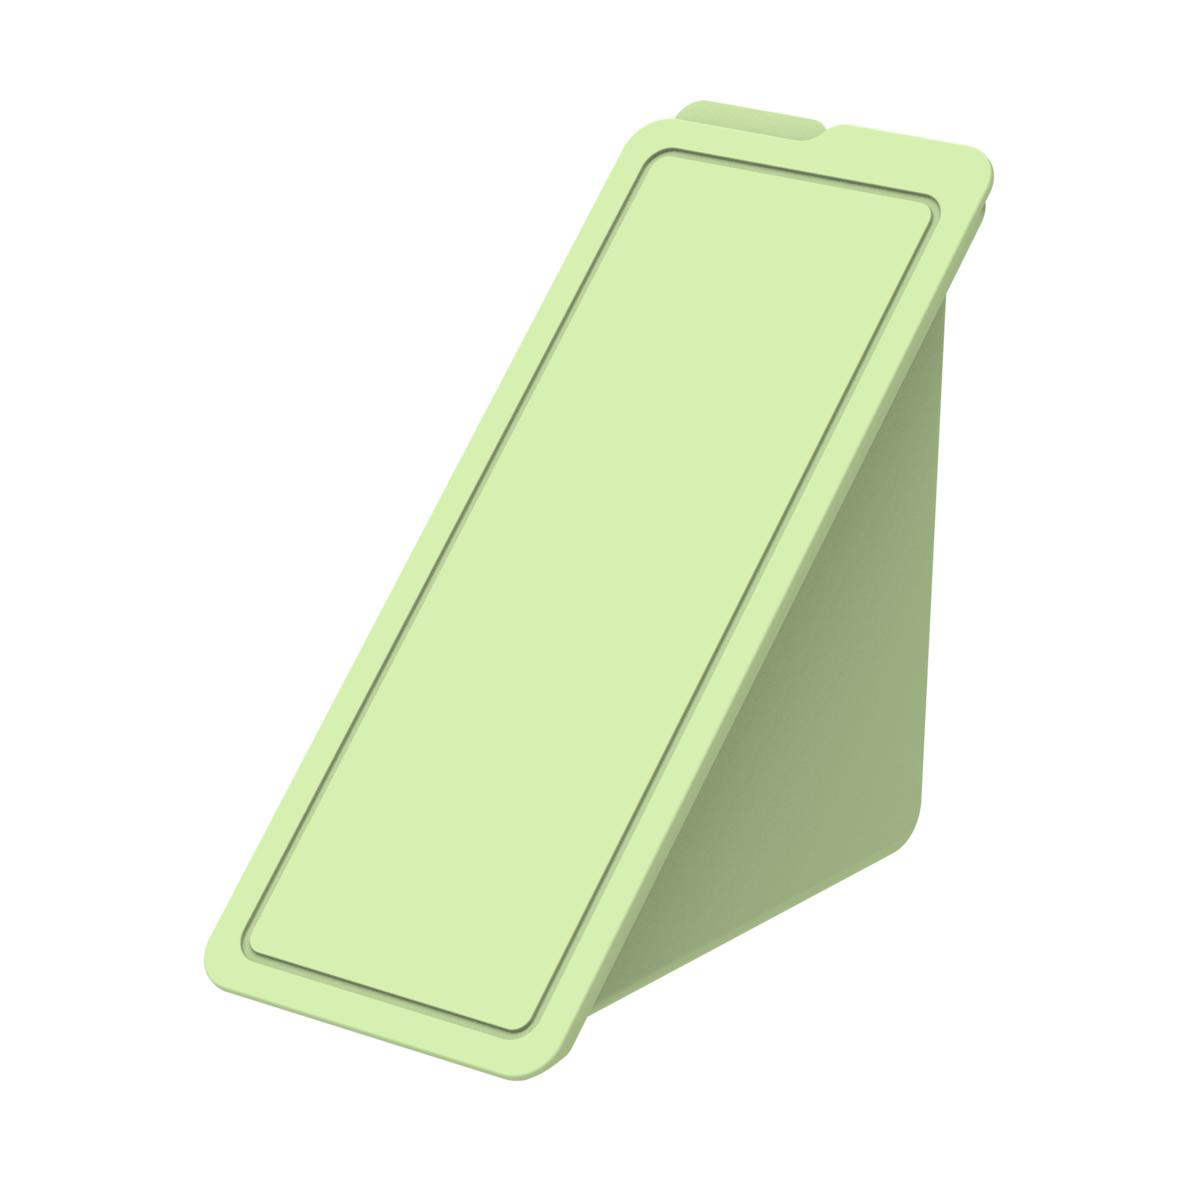 Tri Easy - Reusable Triangle Sandwich Box